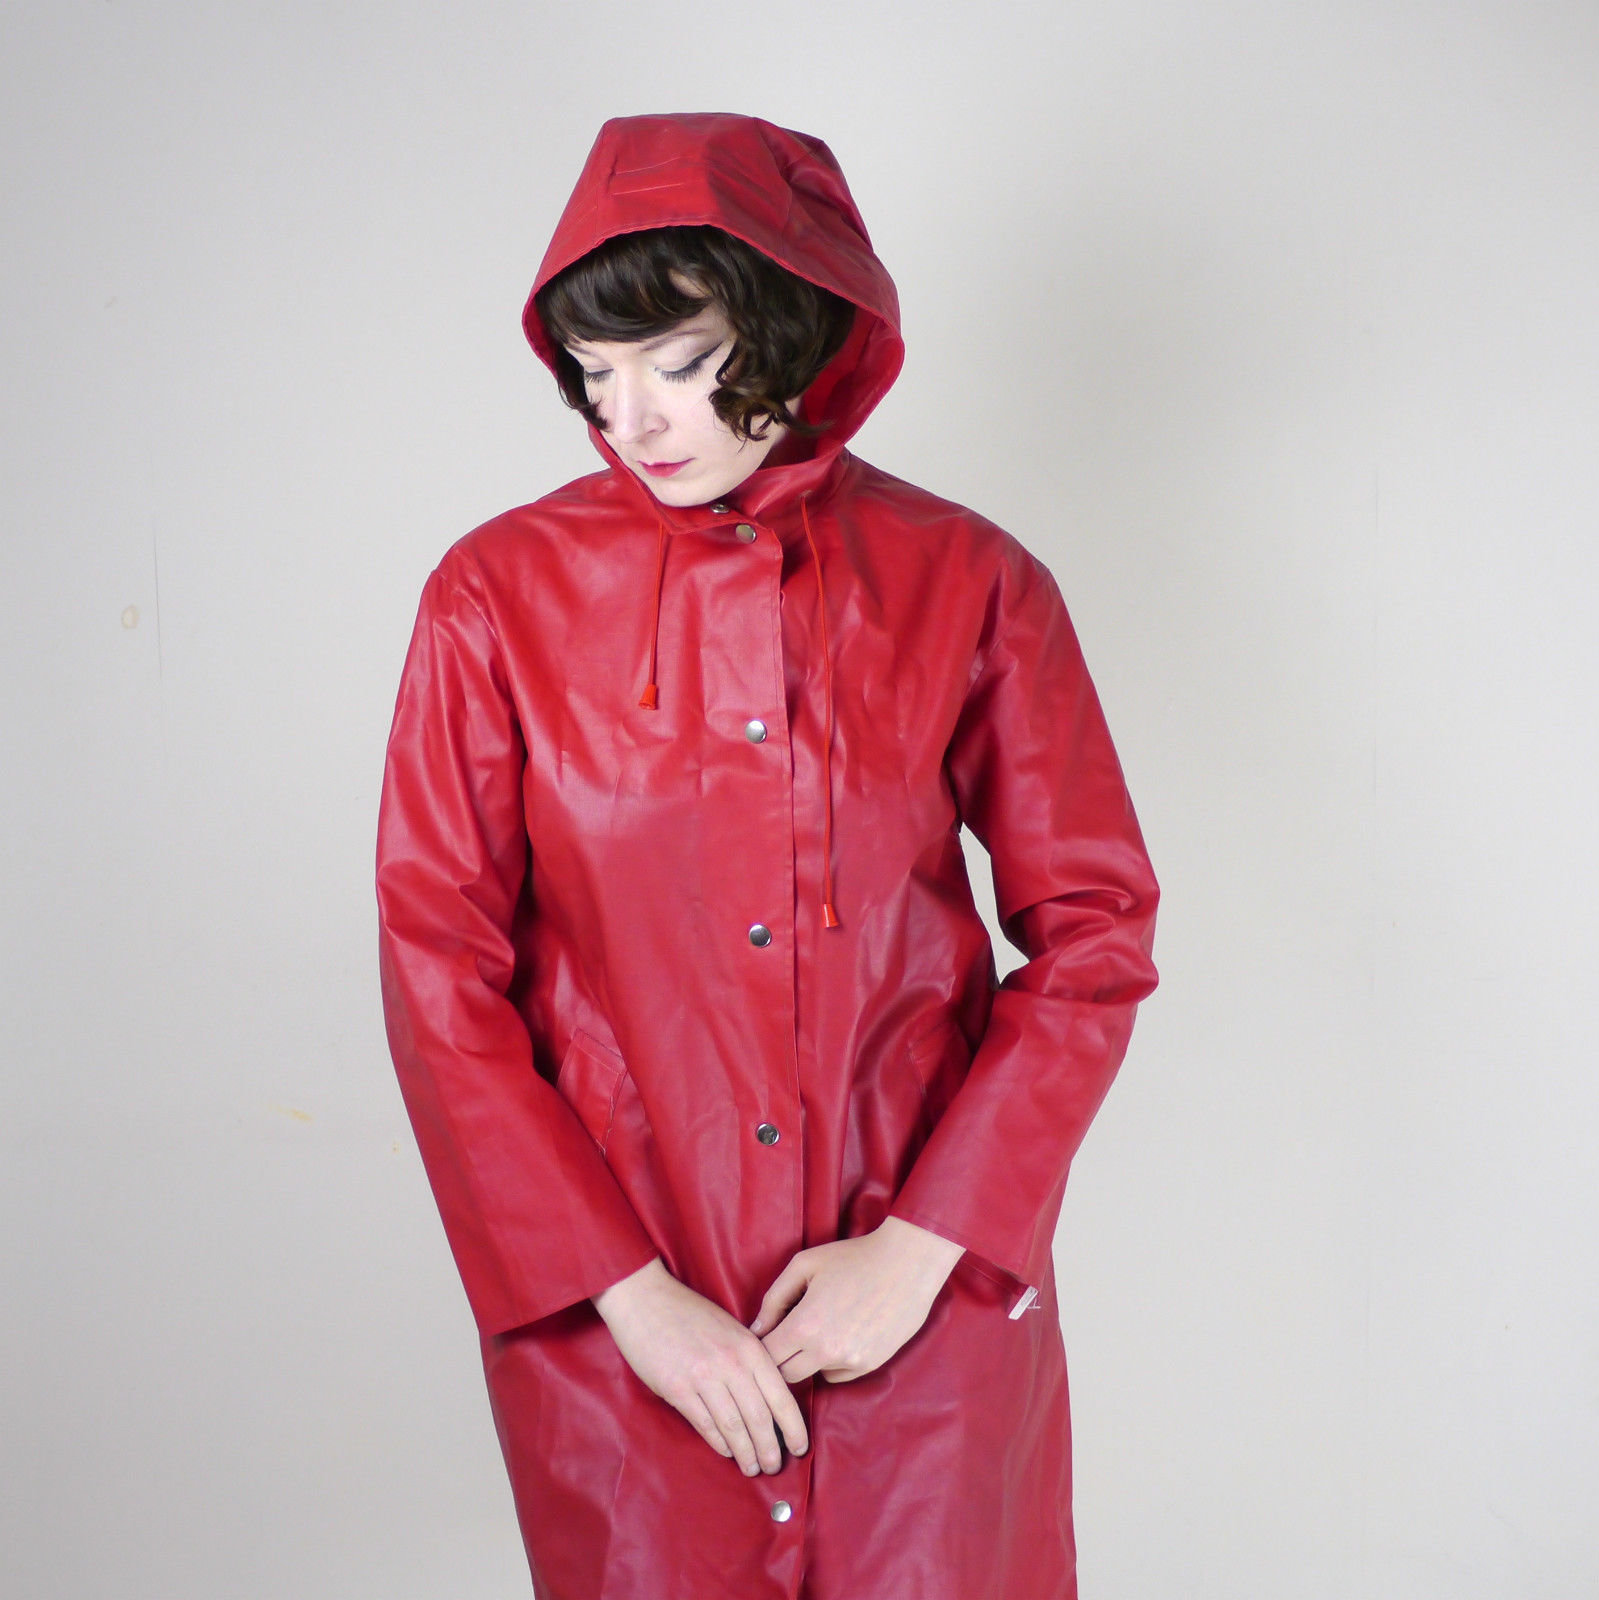 Hooded raincoat, Umbrellas and Raincoat on Pinterest